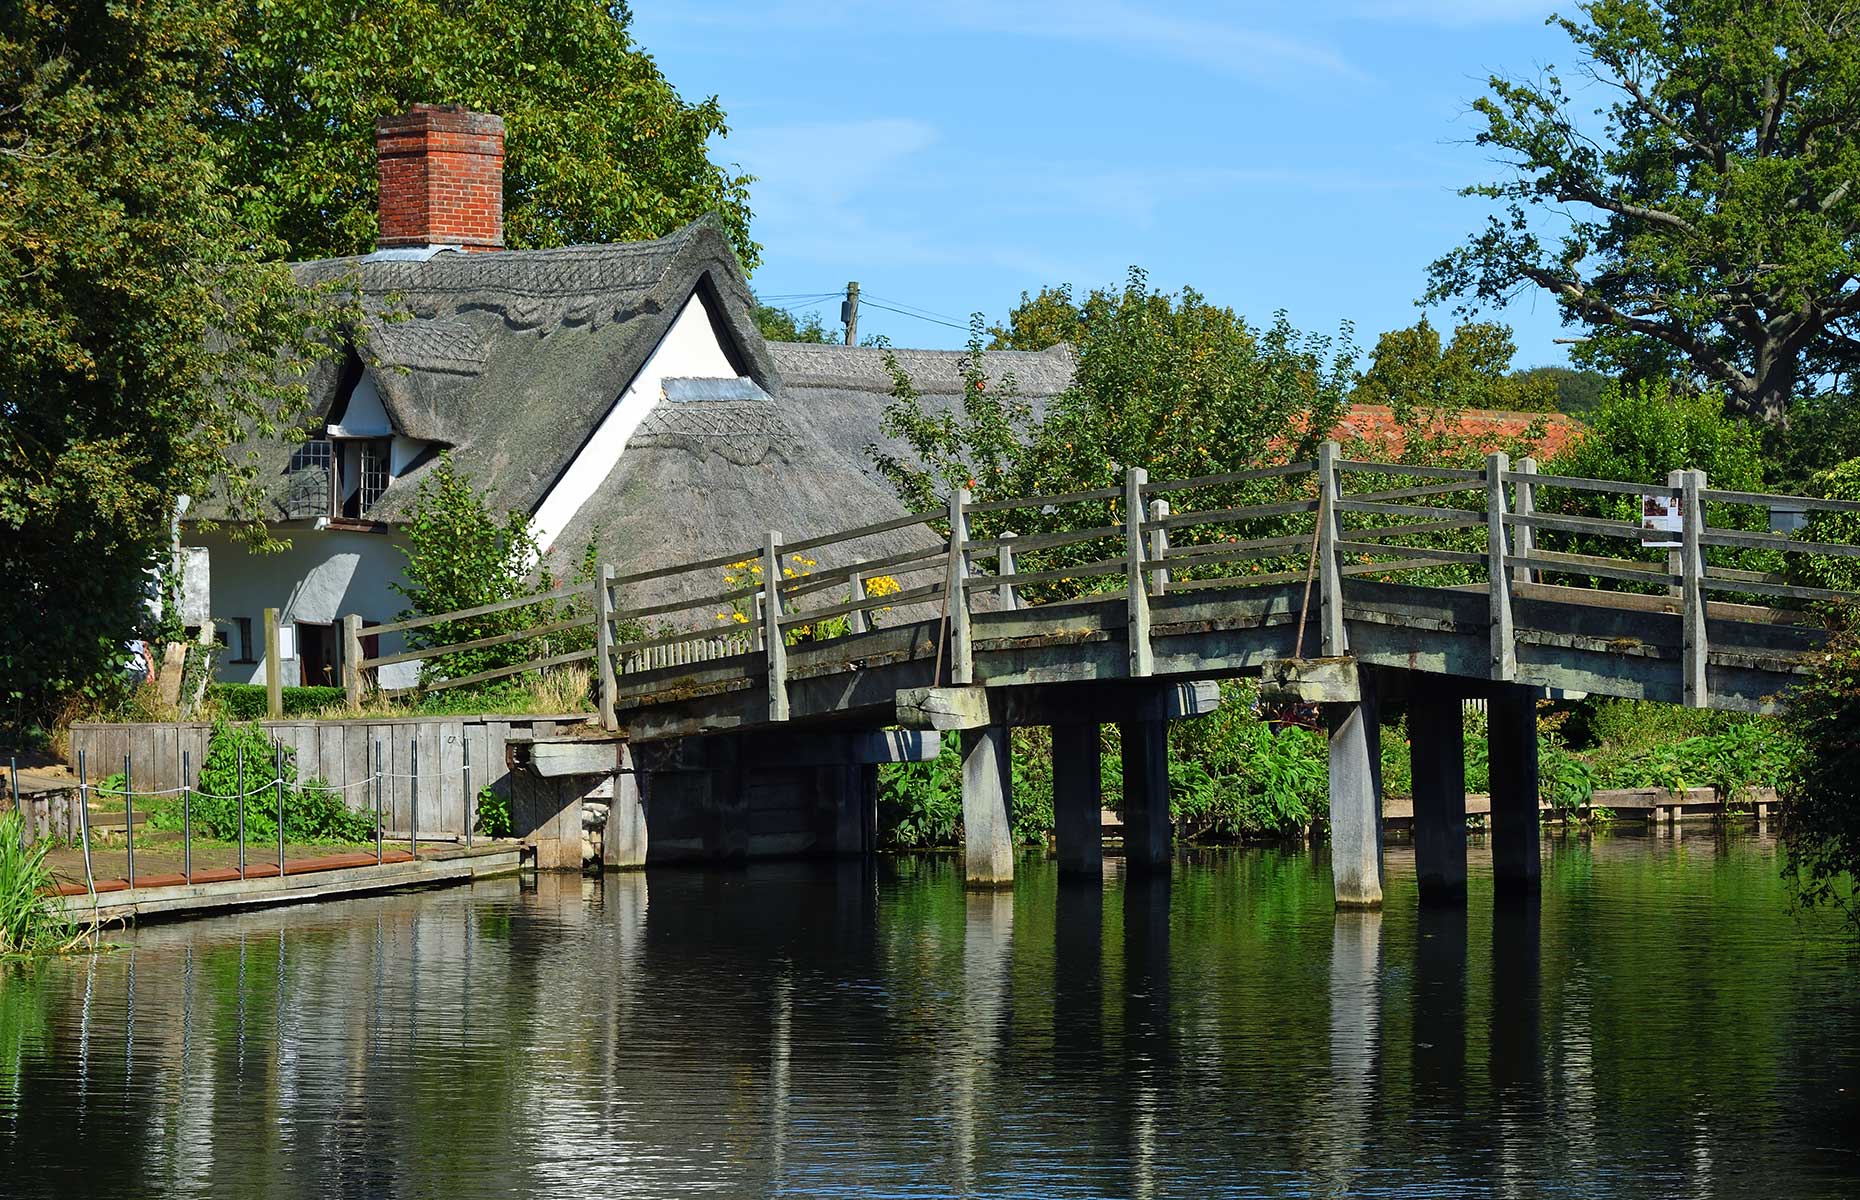 Bridge Cottage, Flatford, Dedham Vale (Image: Martin Charles Hatch/Shutterstock)